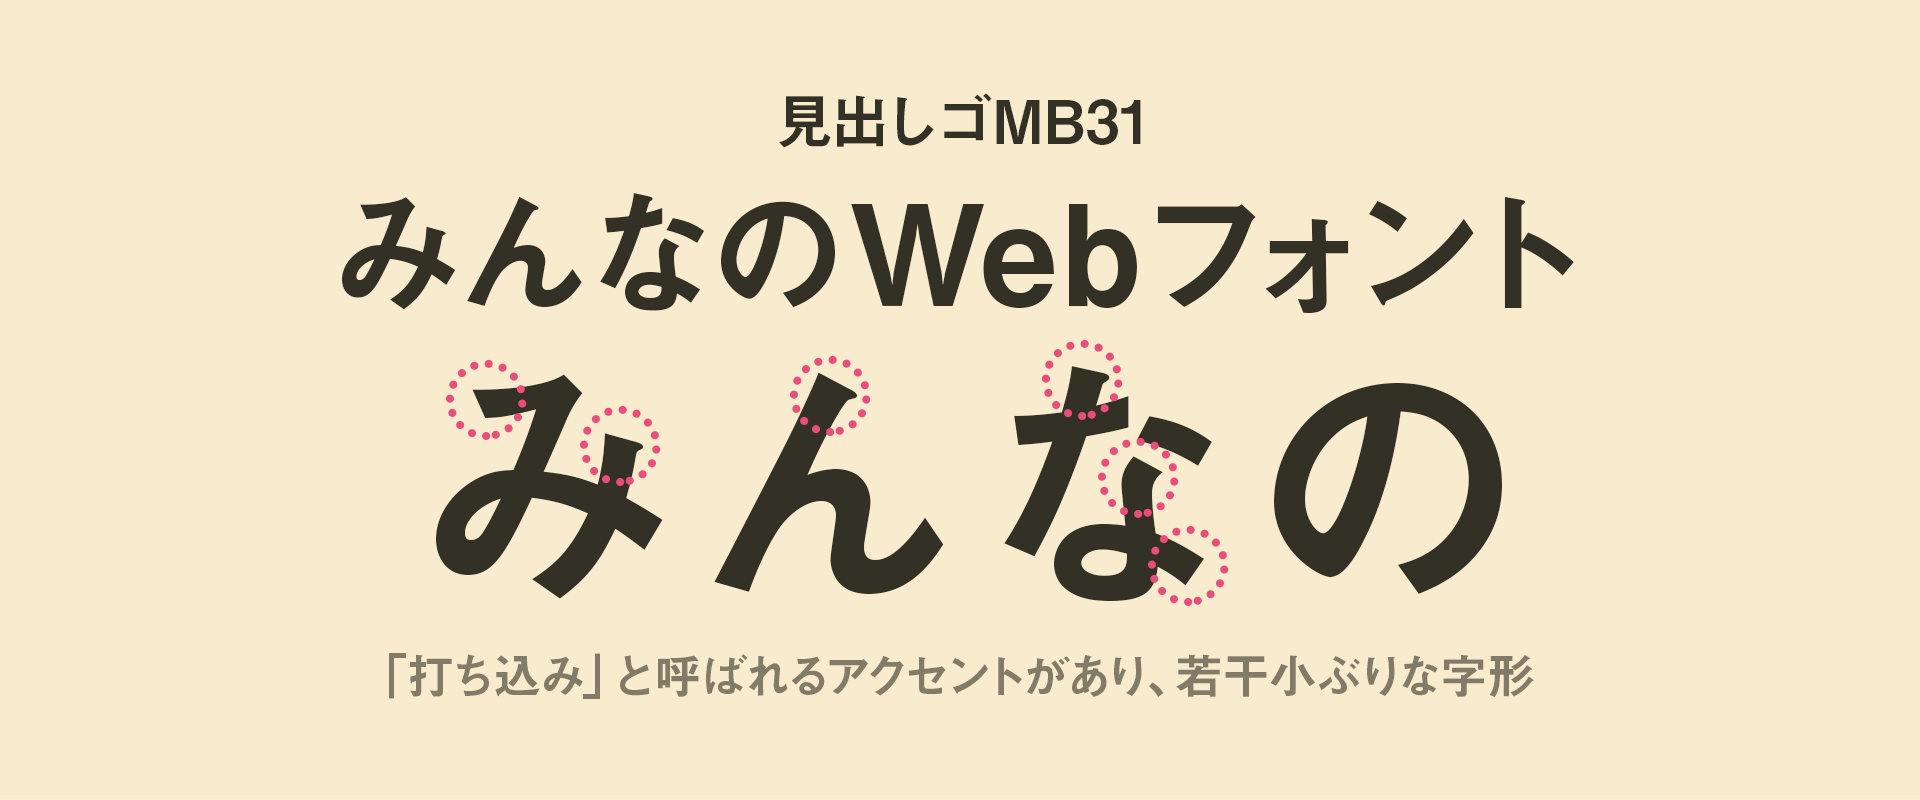 商用利用可能 高品質なオススメ日本語webフォント10選 無料フォント多数 Ics Media